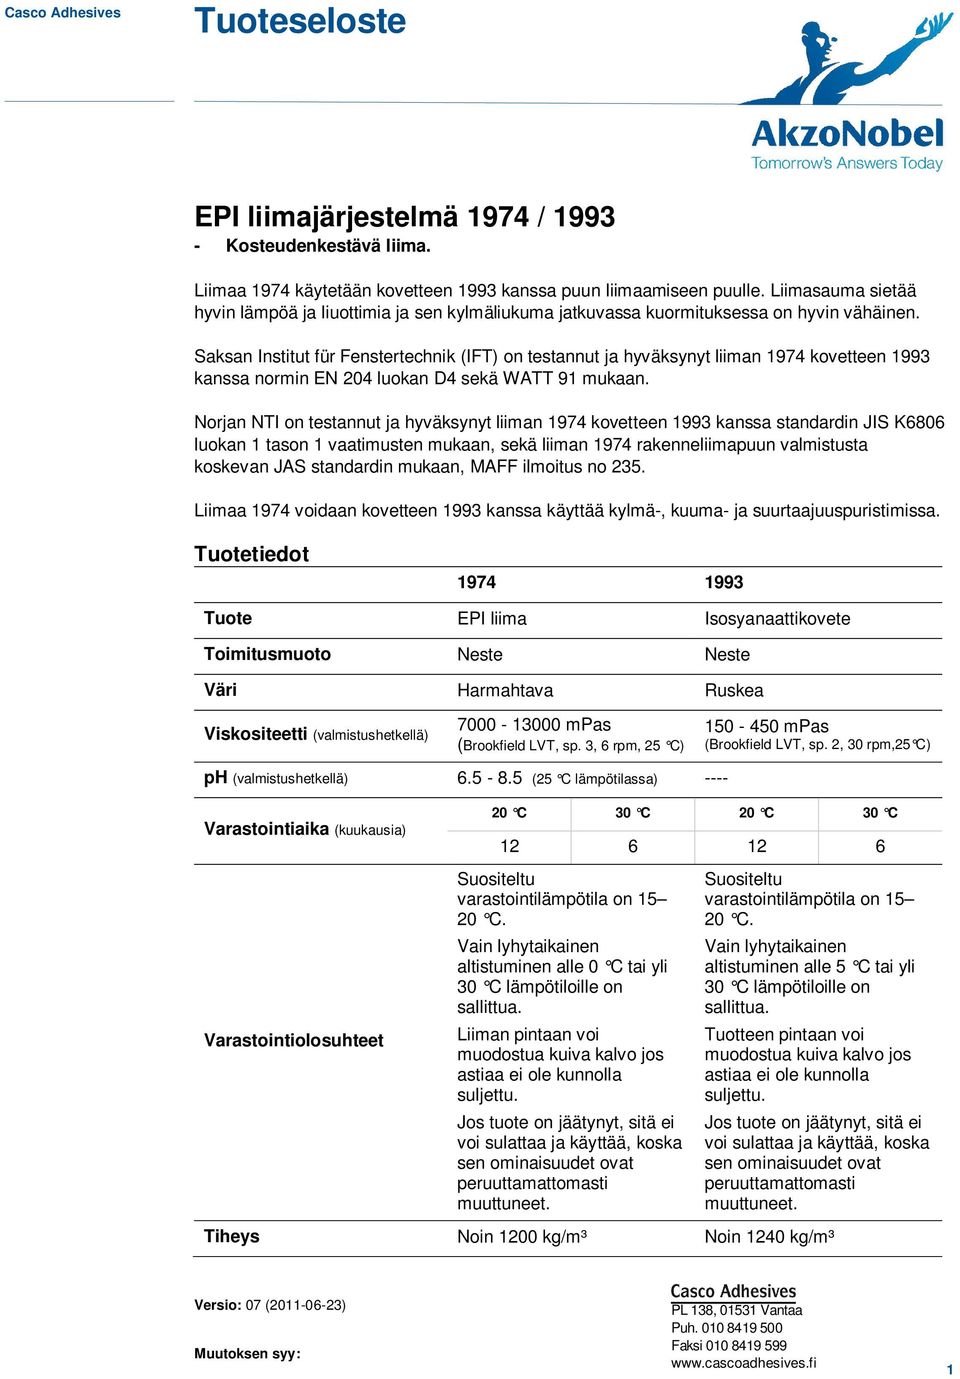 Saksan Institut für Fenstertechnik (IFT) on testannut ja hyväksynyt liiman 1974 kovetteen 1993 kanssa normin EN 204 luokan D4 sekä WATT 91 mukaan.